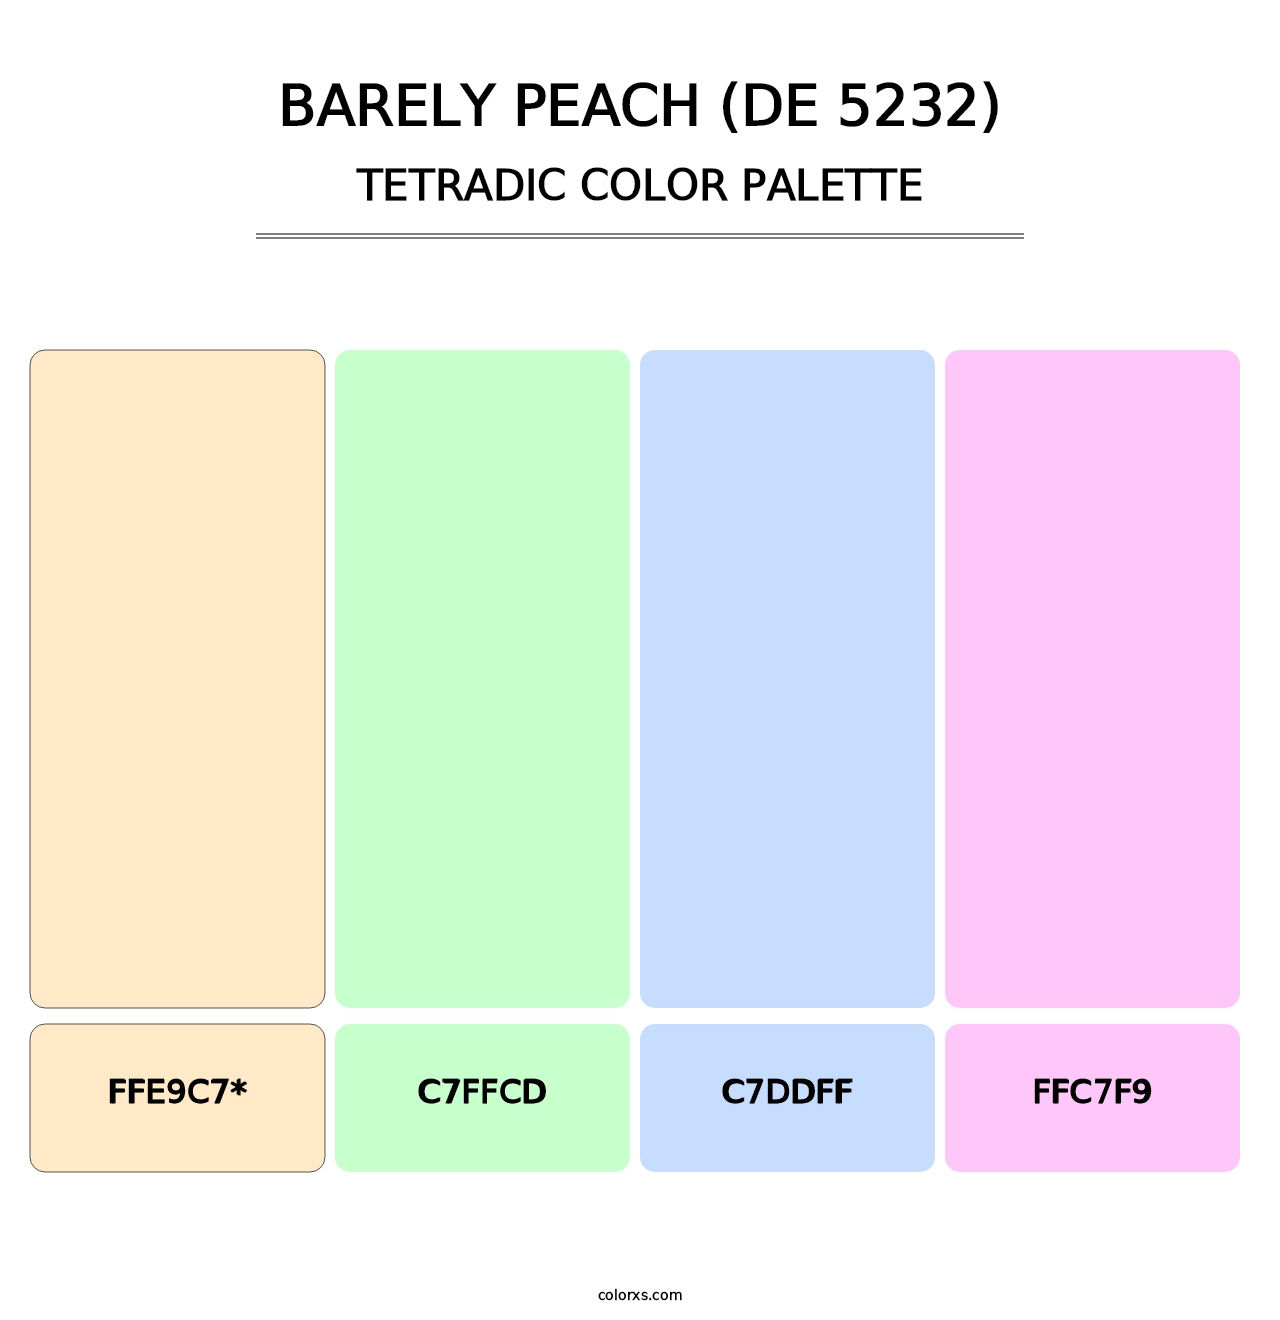 Barely Peach (DE 5232) - Tetradic Color Palette